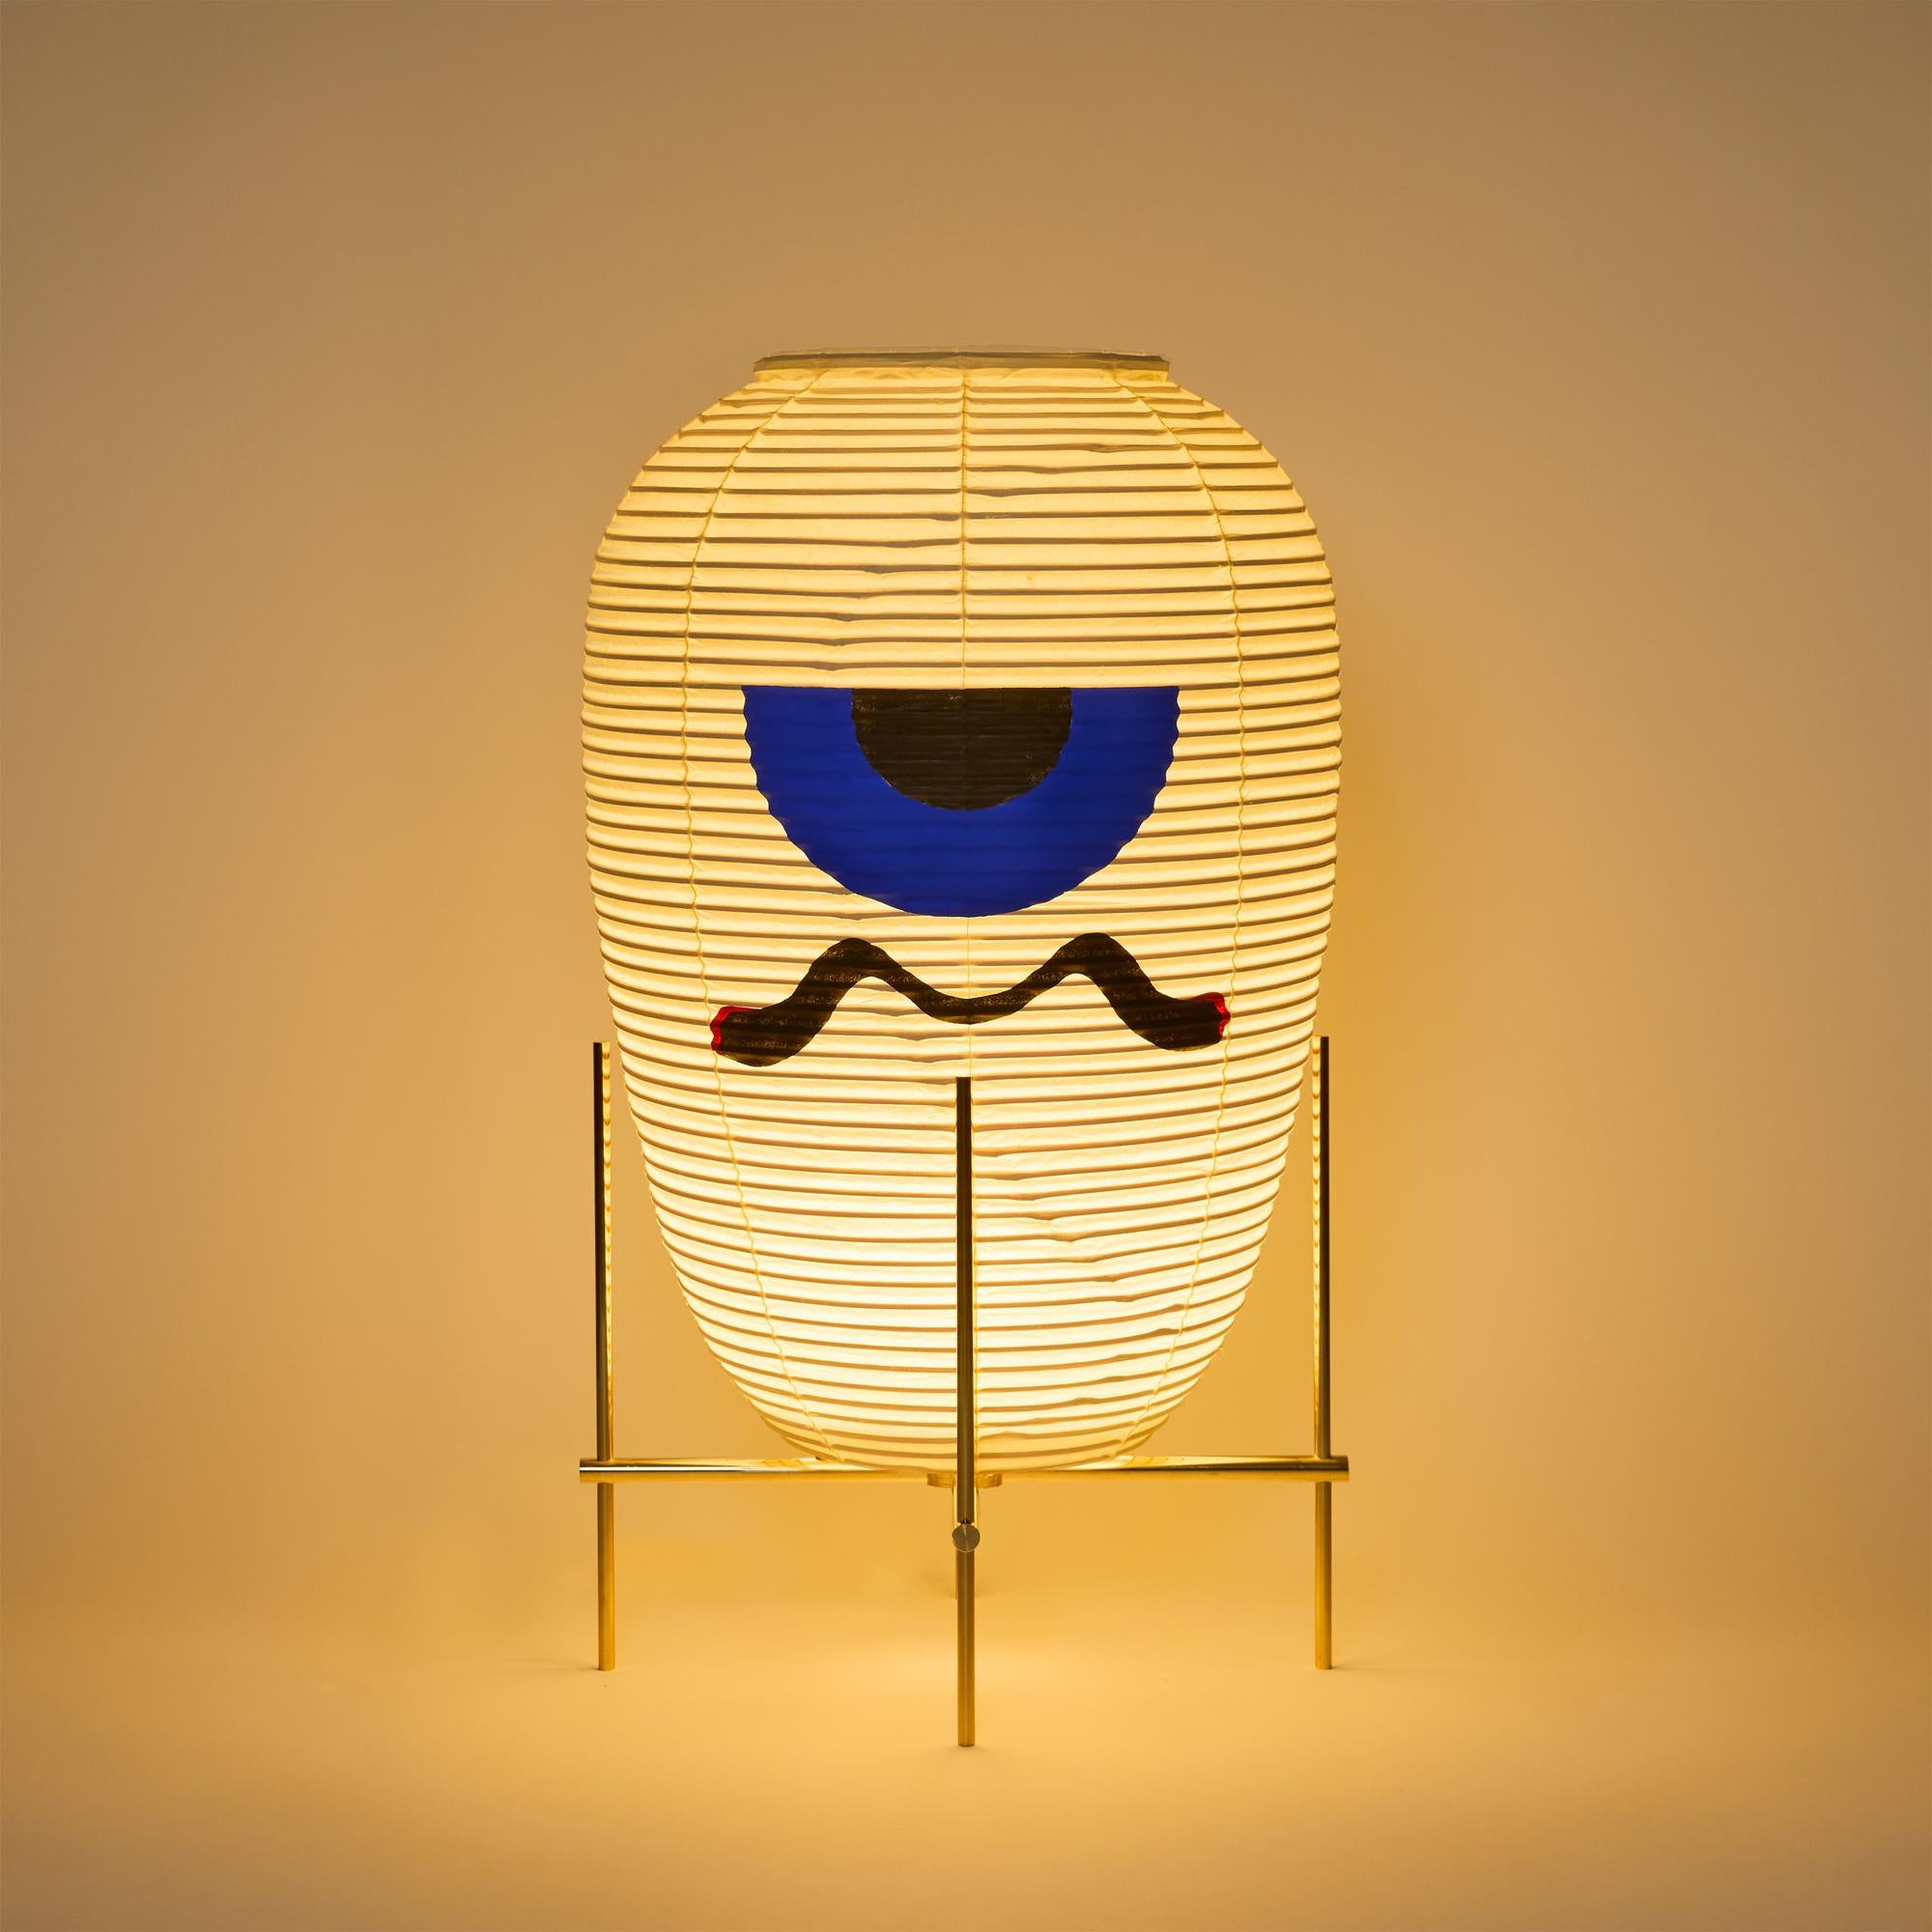 Nom : OBAKE UN
Lampe de sol à abat-jour en papier japonais Washi de style contemporain. L'abat-jour Washi est célèbre comme les luminaires Akari d'Isamu Noguchi. 
La base est en laiton. Modèle peint en série limitée. Edition de 3+1AP

Ampoule